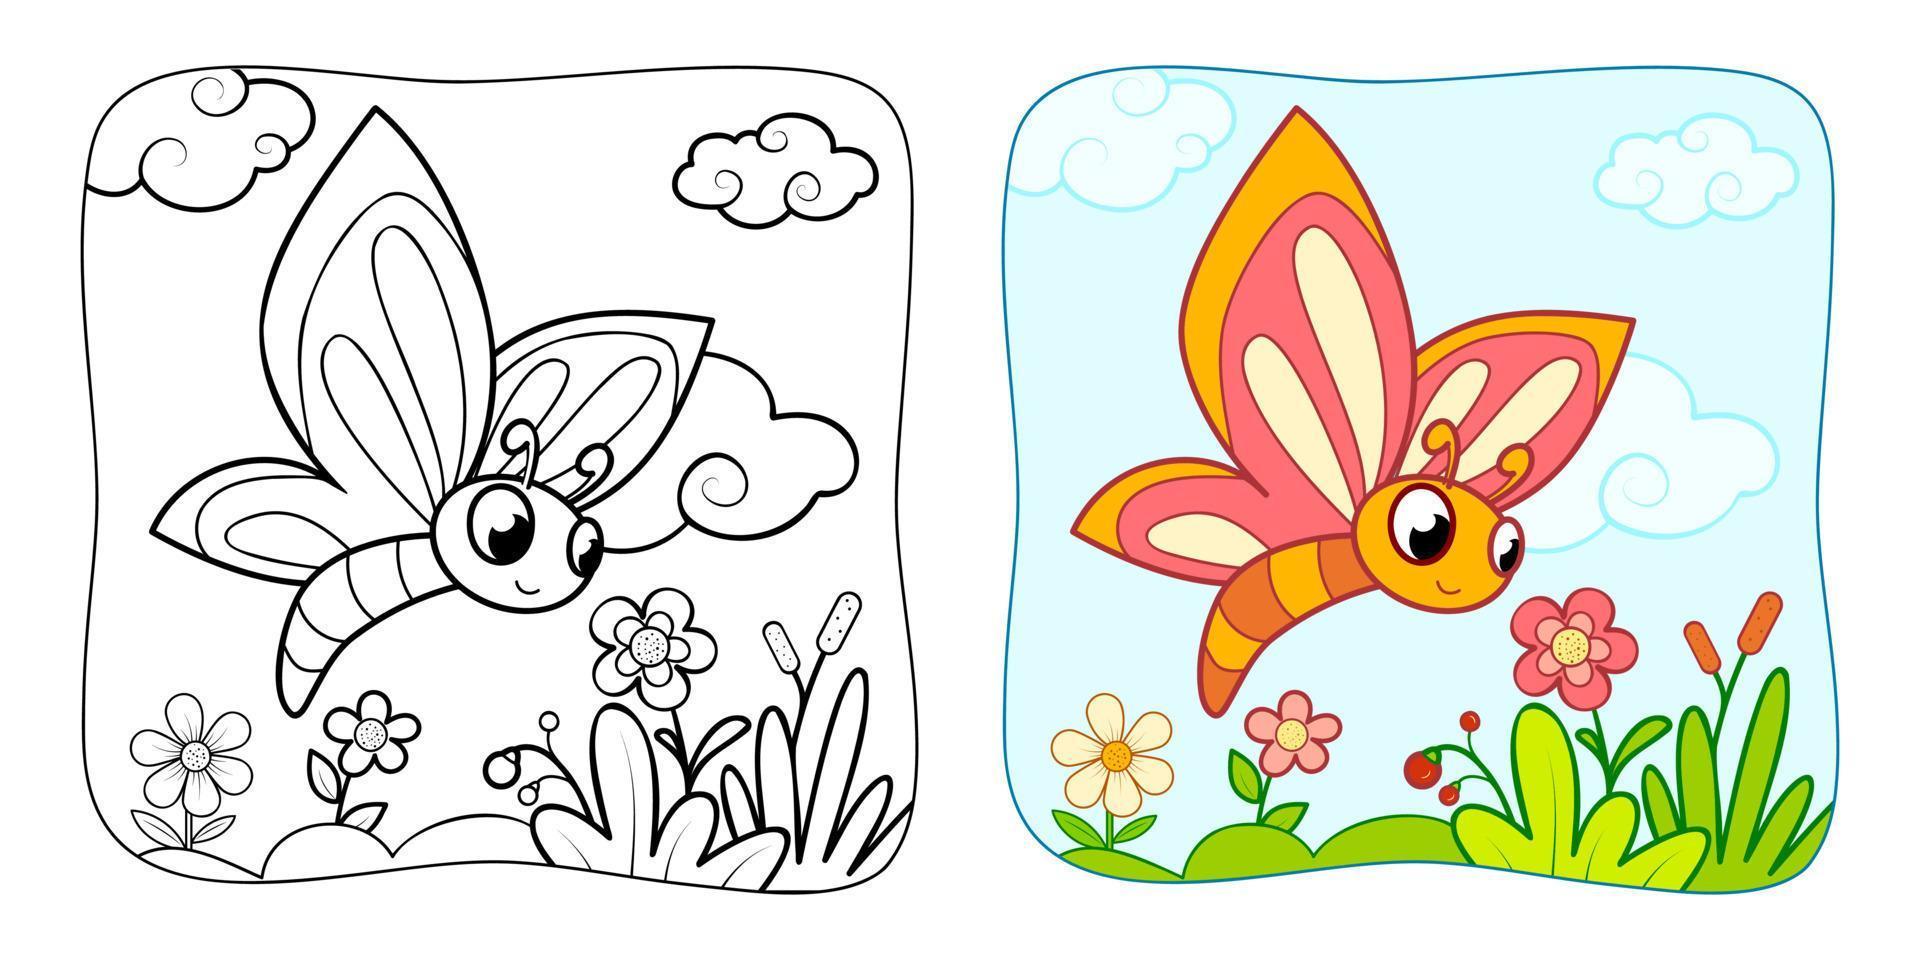 kleurboek of kleurplaat voor kinderen. vlinder vector illustratie clipart. natuur achtergrond.